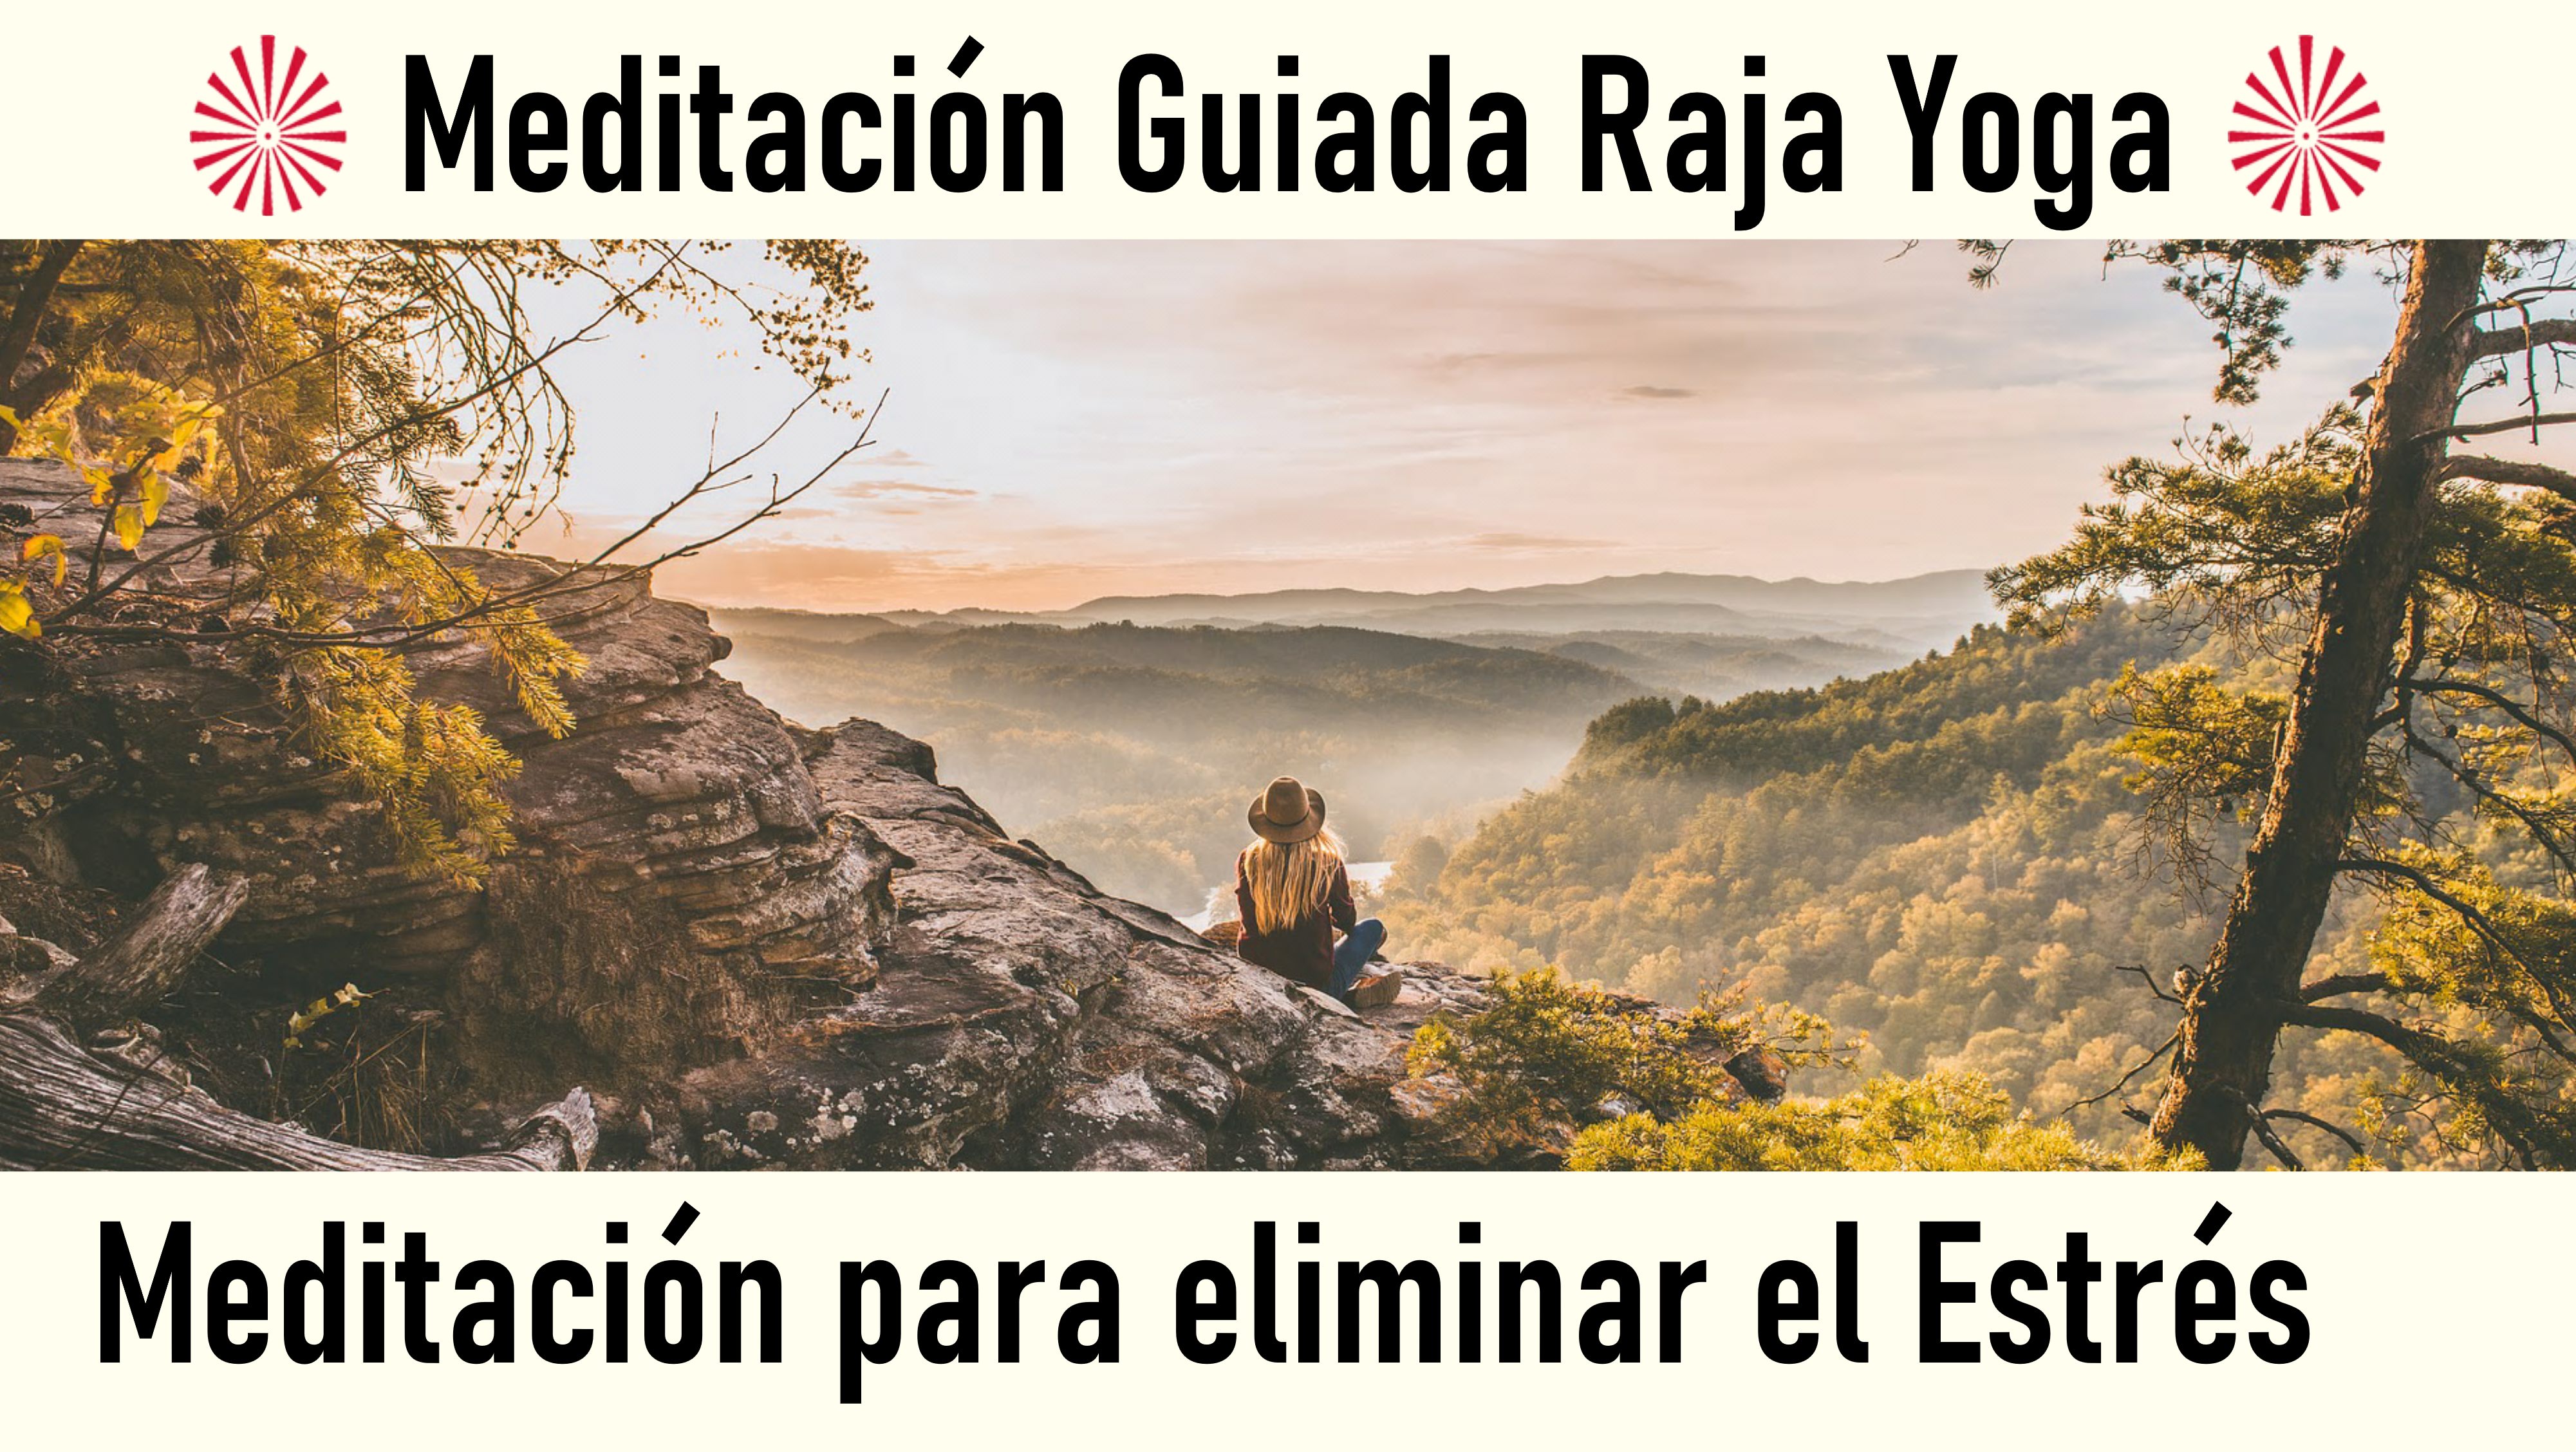 Meditación Raya Yoga: Meditación para eliminar el estrés (30 Junio 2020) On-line desde Valencia